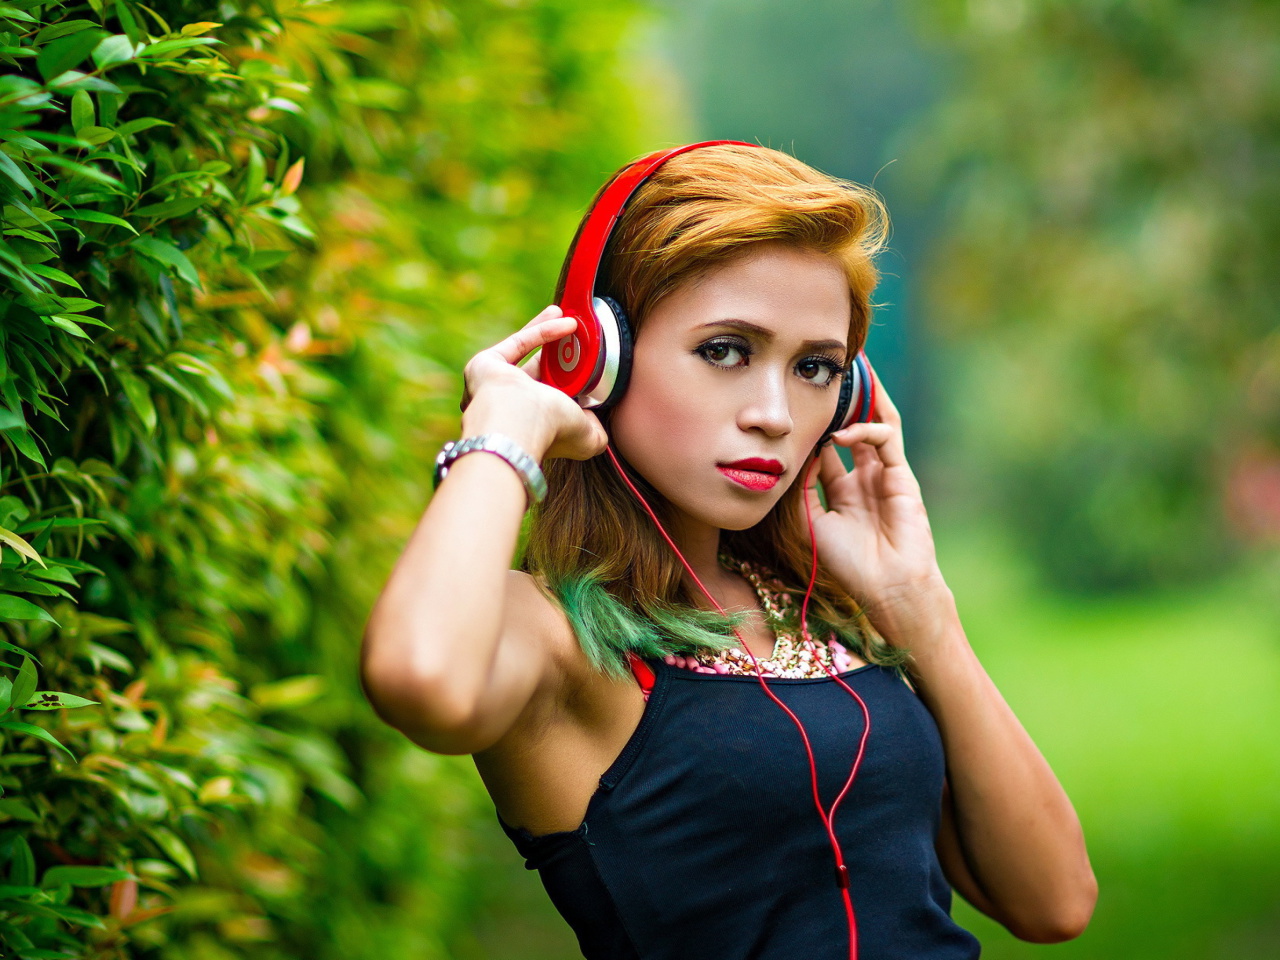 Das Sweet girl in headphones Wallpaper 1280x960